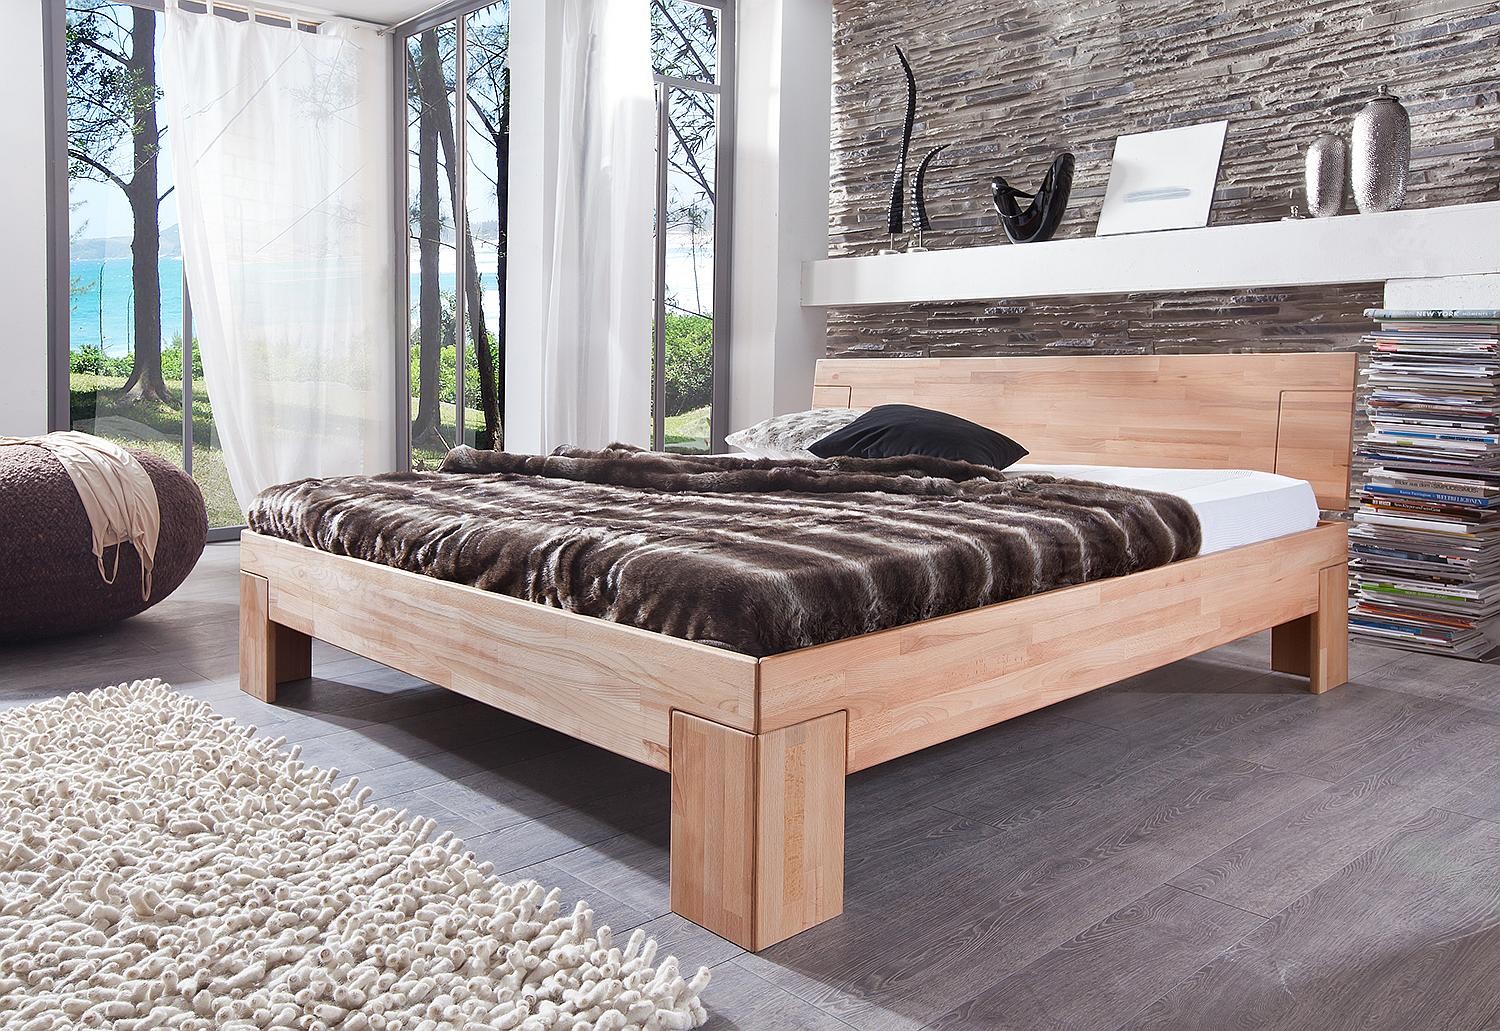 двуспальная кровать массив с тумбочками